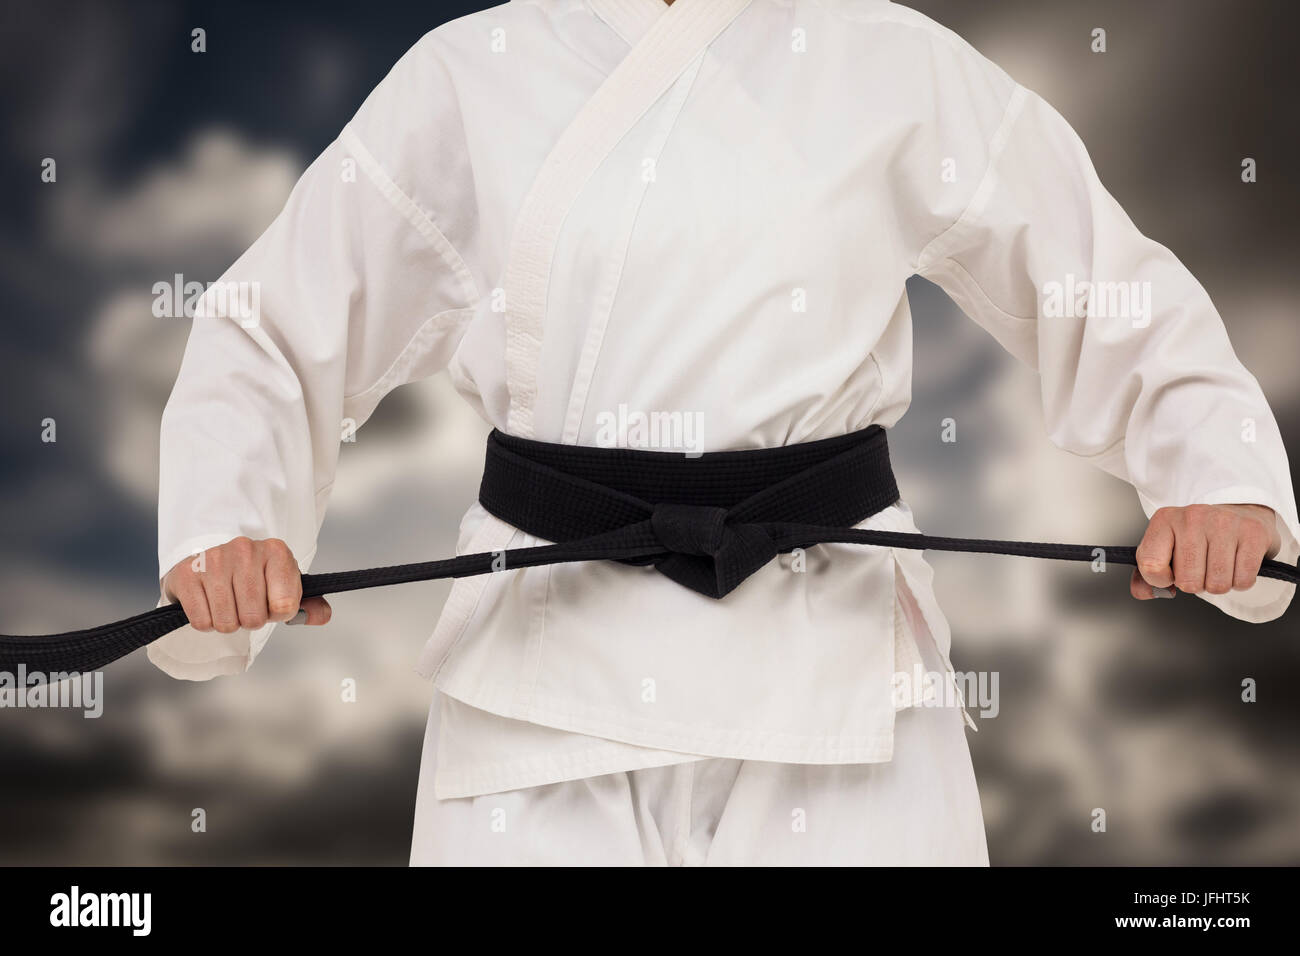 Das zusammengesetzte Bild im Fighter Anzug Karate Gürtel Stockfoto